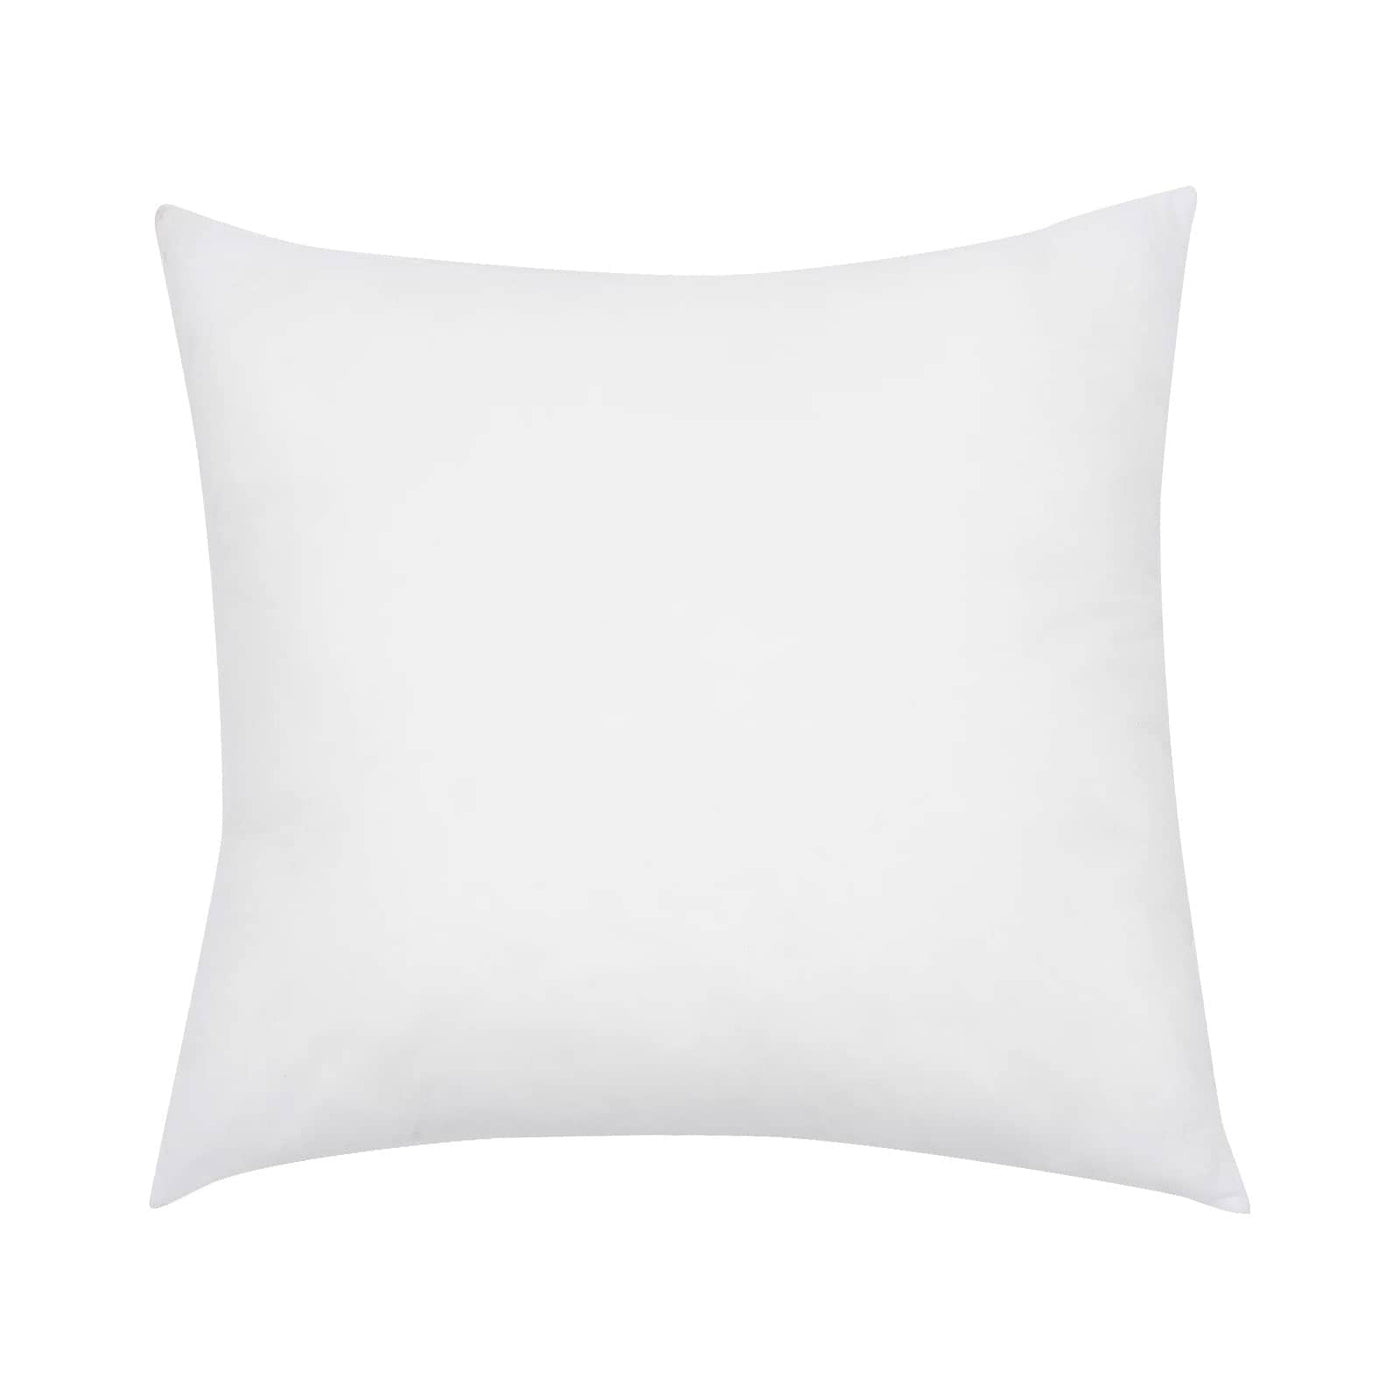 Medium Square Cushion Pad, White, 45x45 cm Cushion Pads sazy.com